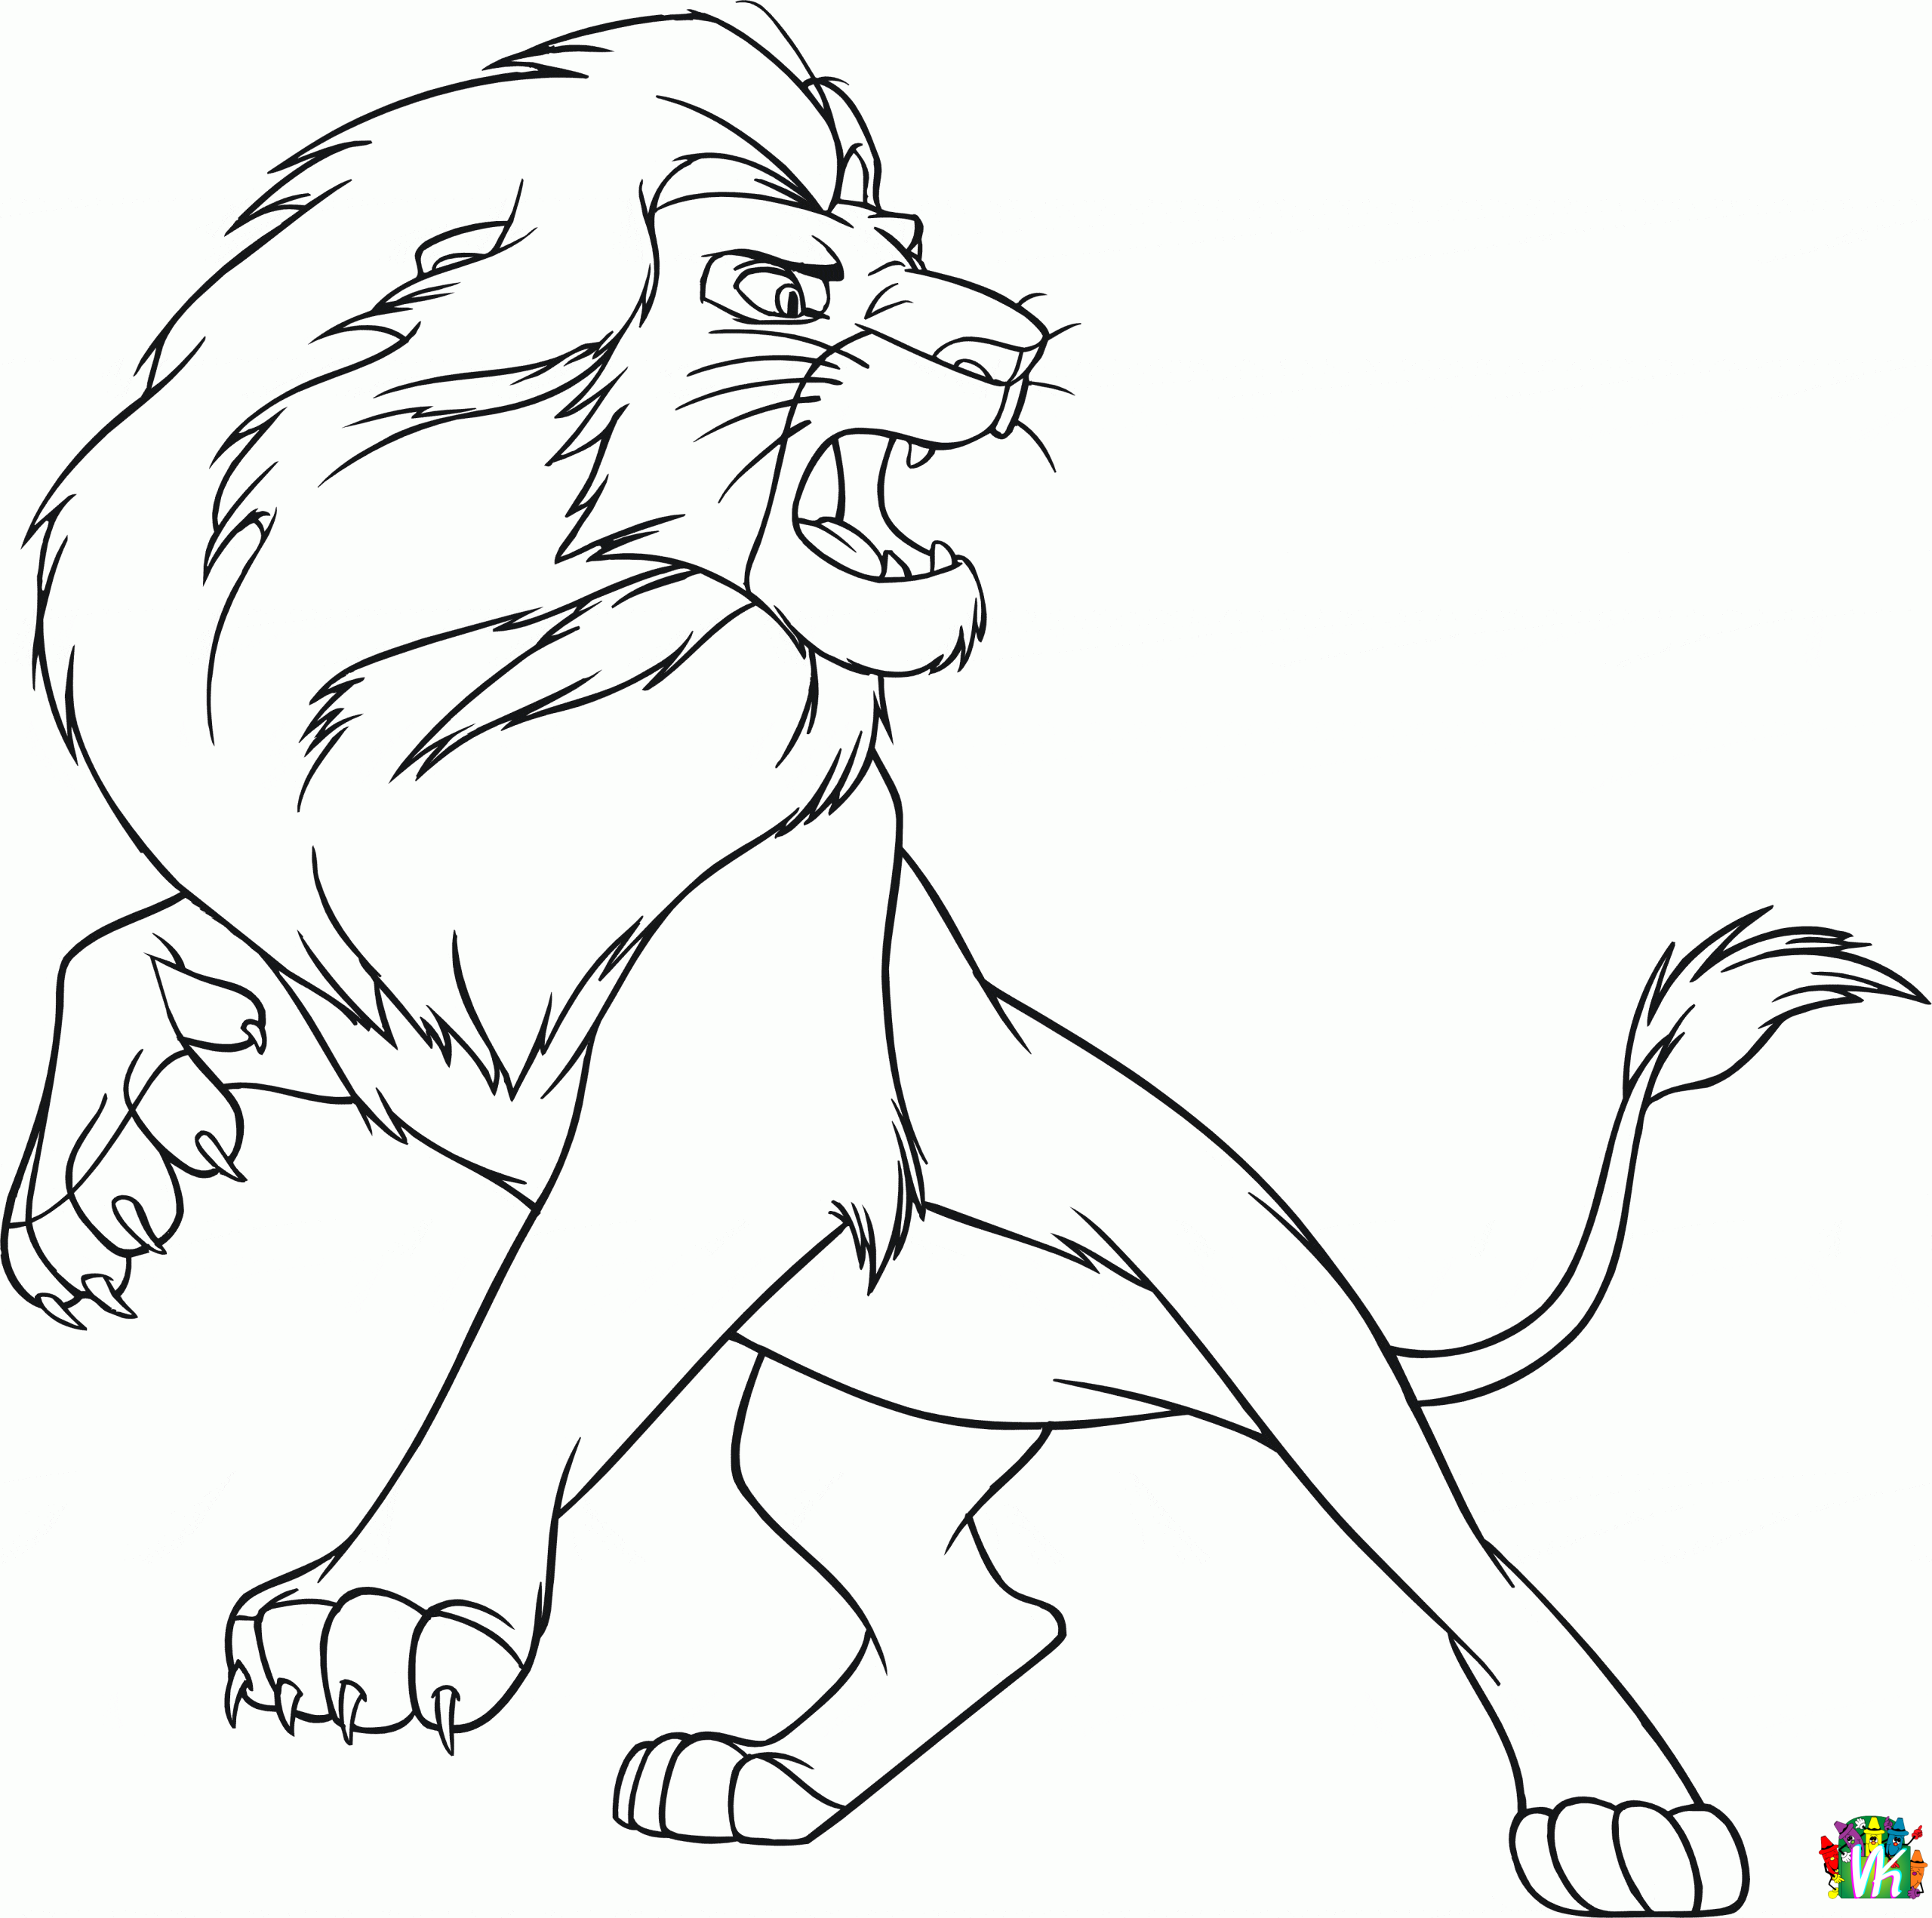 Leijonat-varityskuvat (2)